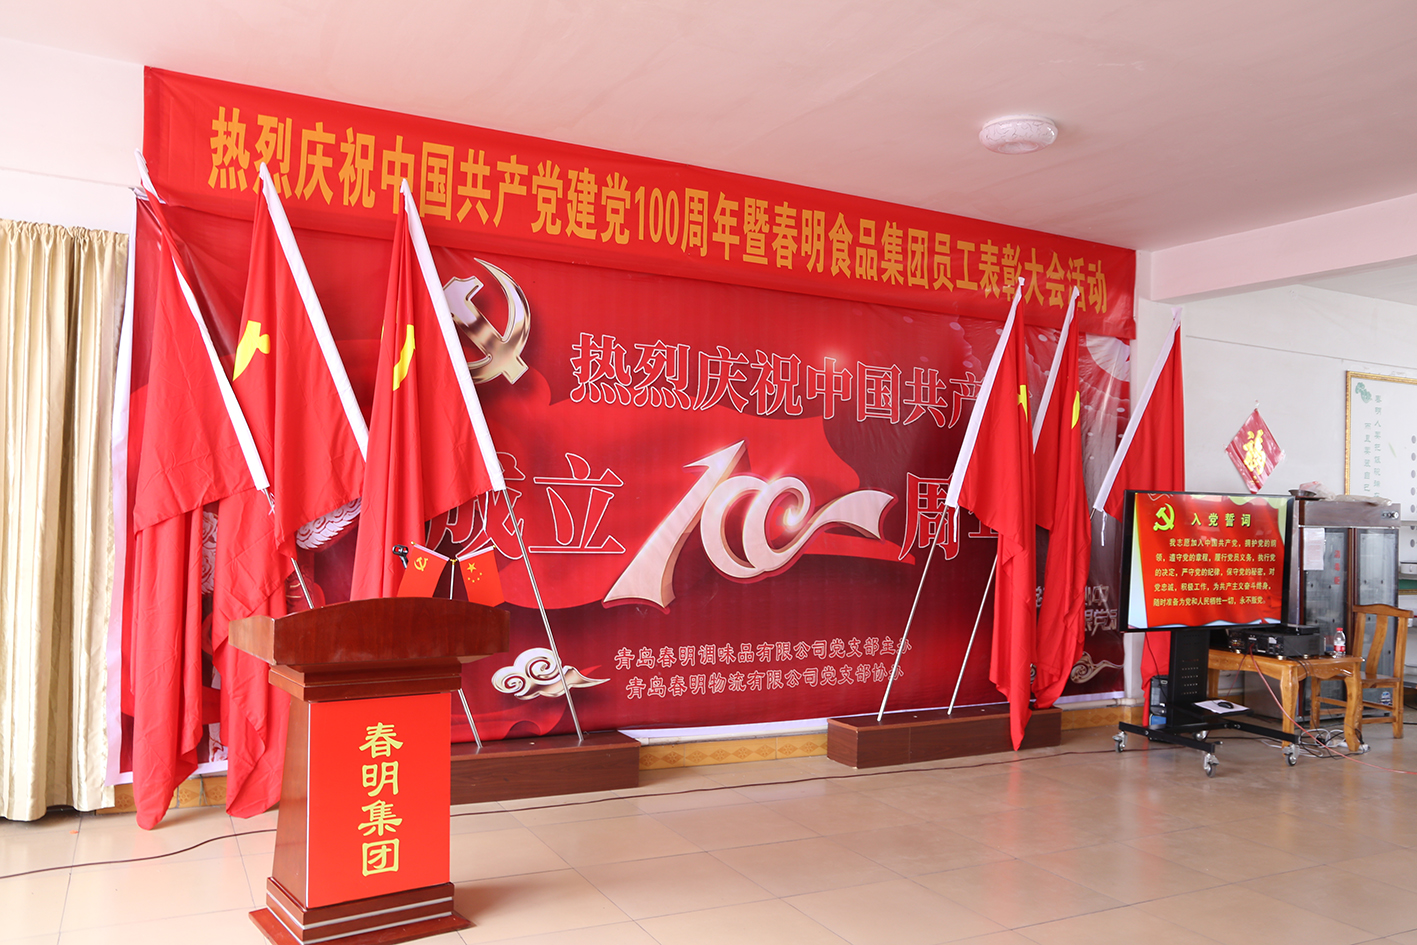 类似千赢乐虎的网站召开庆祝中国共产党建党100周年活动